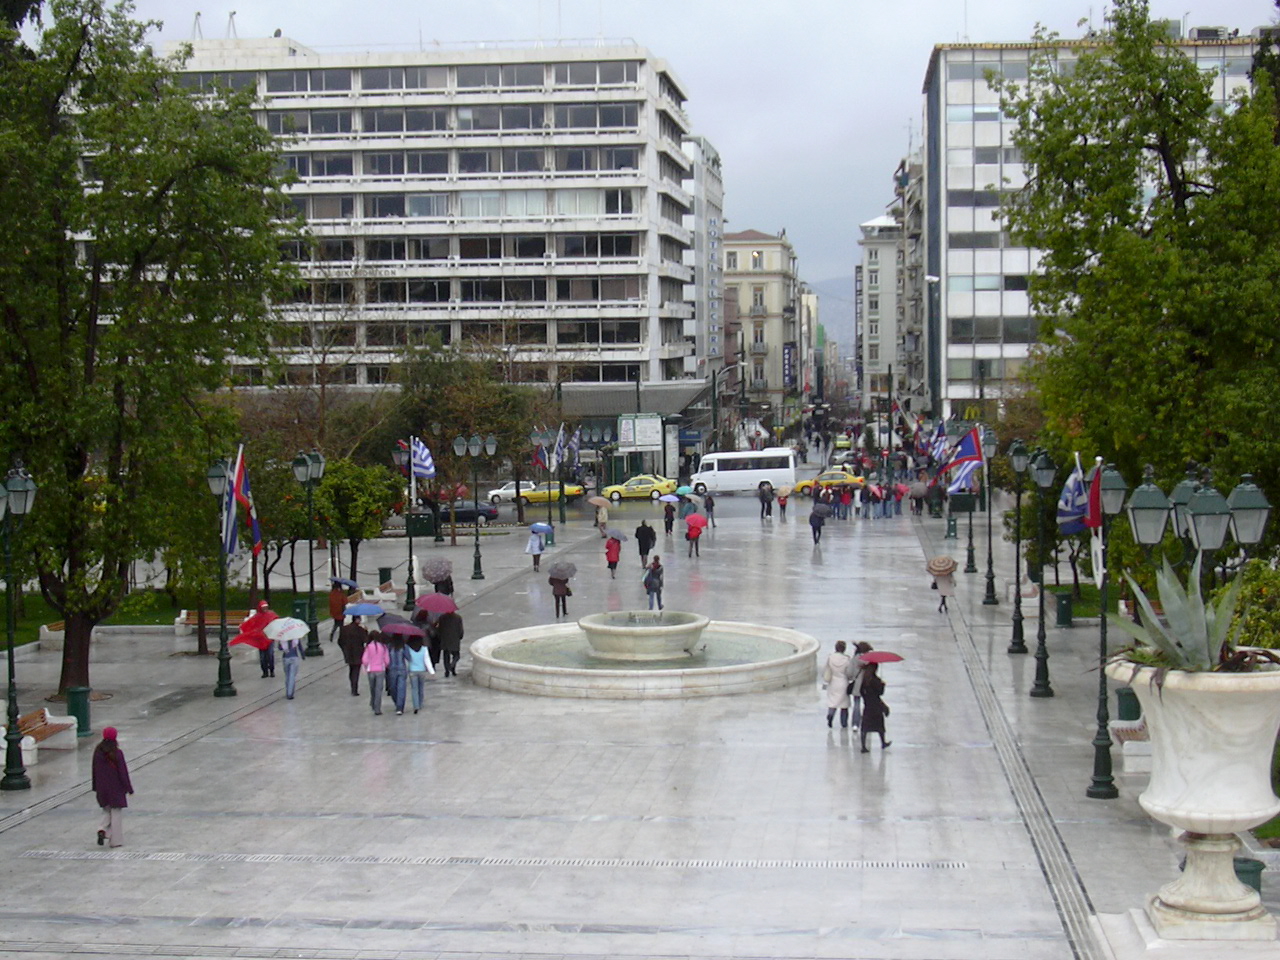 Athen, Beginn der Ermou-Strasse beim Syntagma-Platz